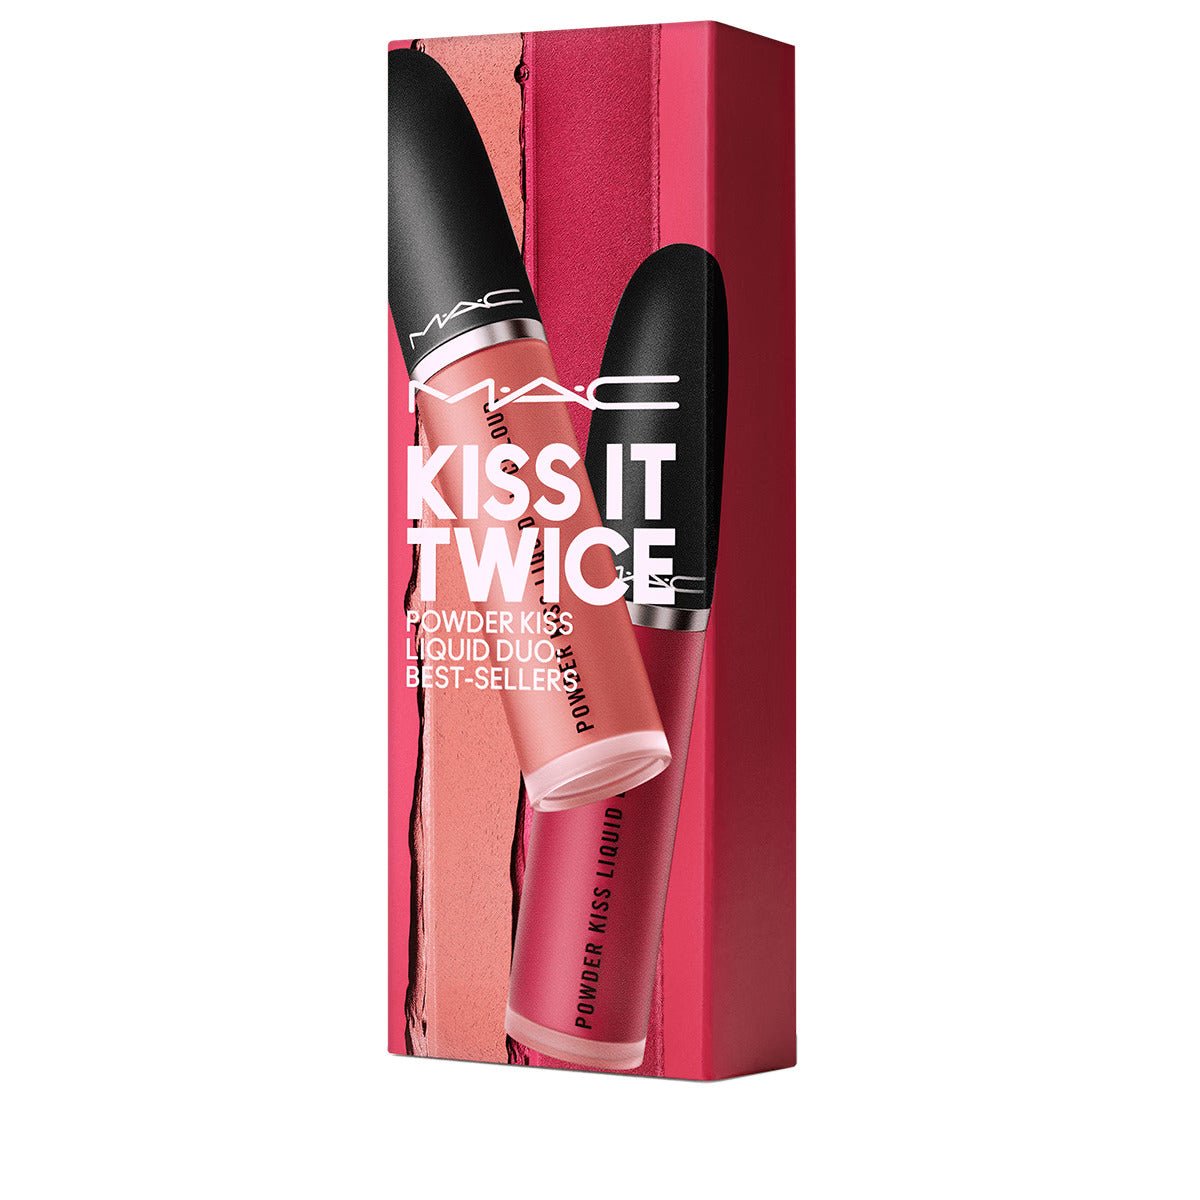 Mac Kiss It Twice Powderkiss Liquid Lipstick Mull It over 989+Sweetie 995 - AllurebeautypkMac Kiss It Twice Powderkiss Liquid Lipstick Mull It over 989+Sweetie 995